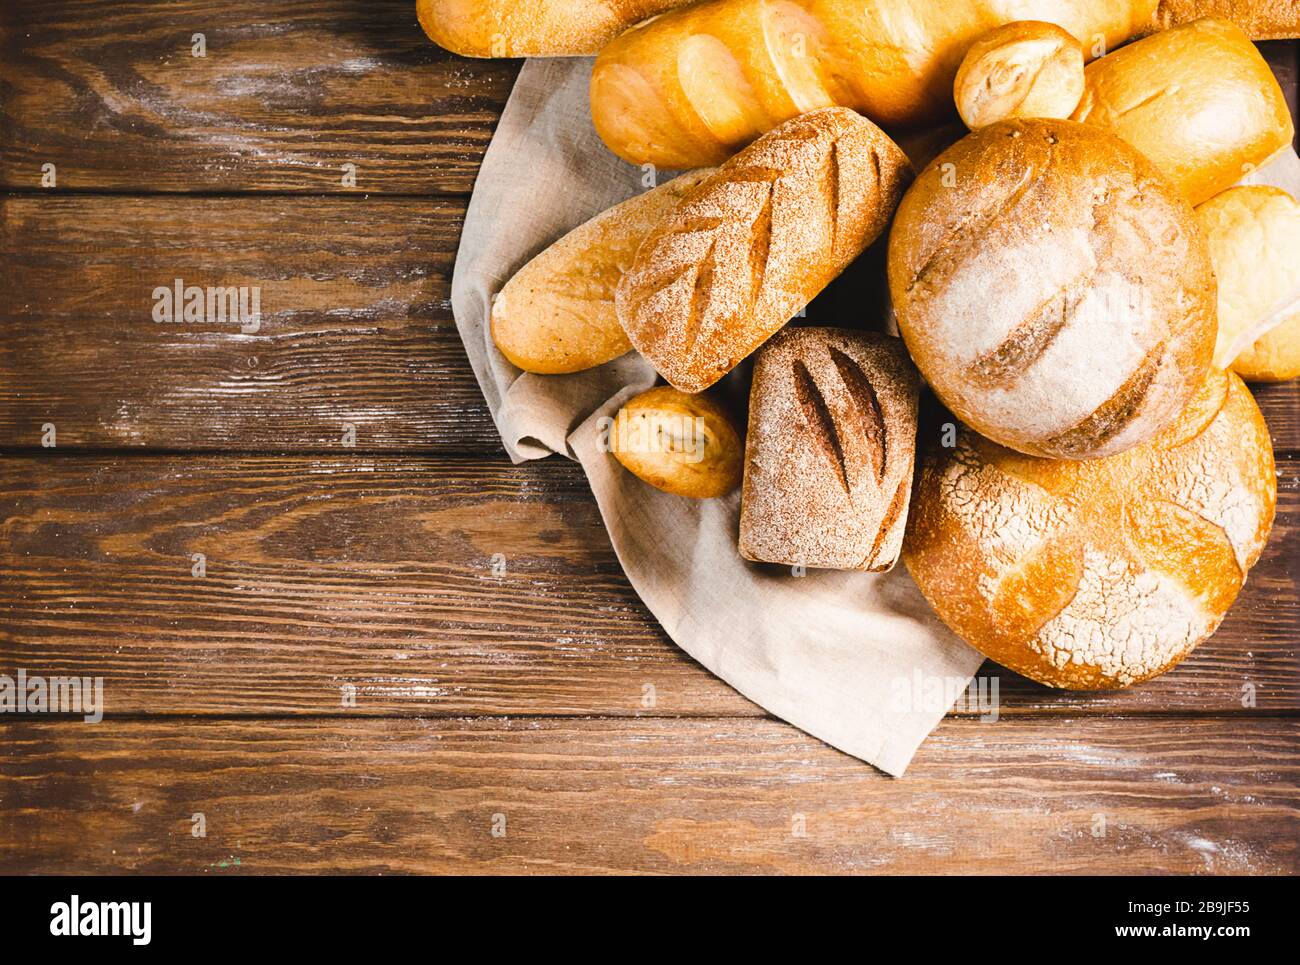 Frisch gebackenes Brot mit einer goldenen Kruste, Brot, Brötchen, weiß, Roggen auf einem rustikalen Holzhintergrund mit sil rustikal. Flaches Layout Stockfoto